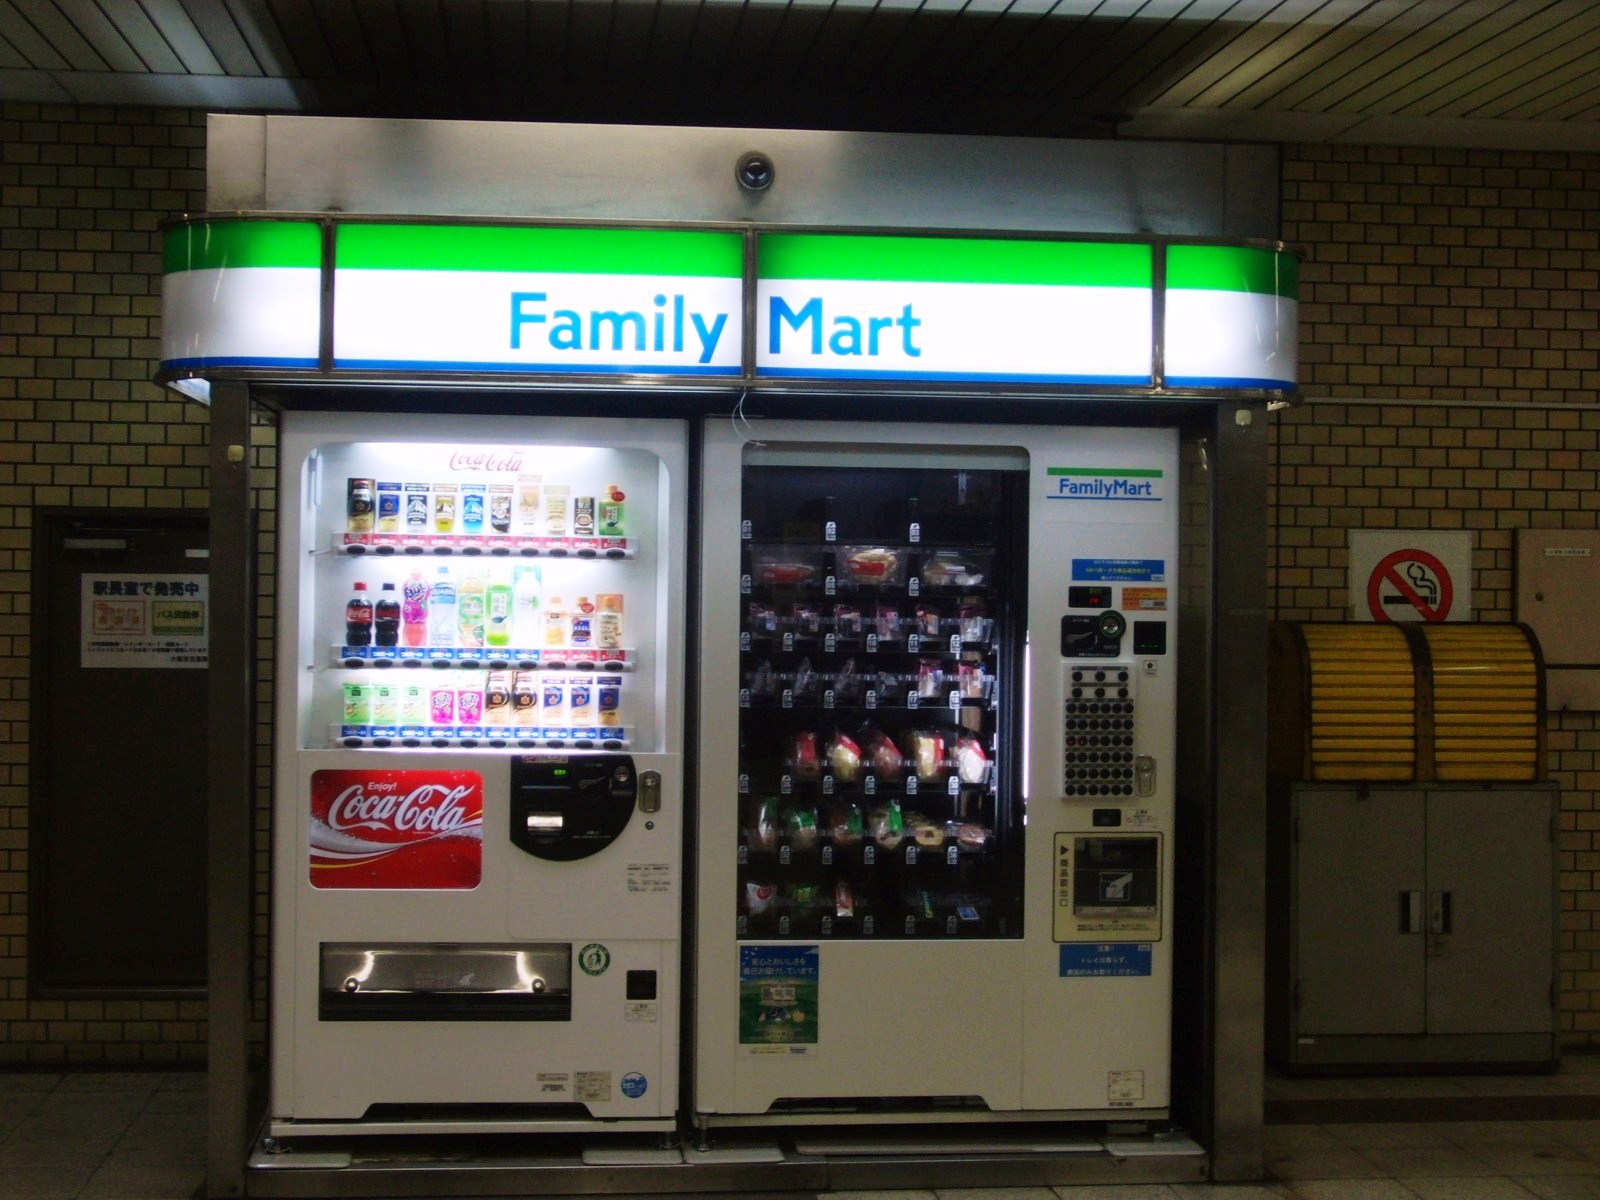 Vending machine mart family FamilyMart Thailand